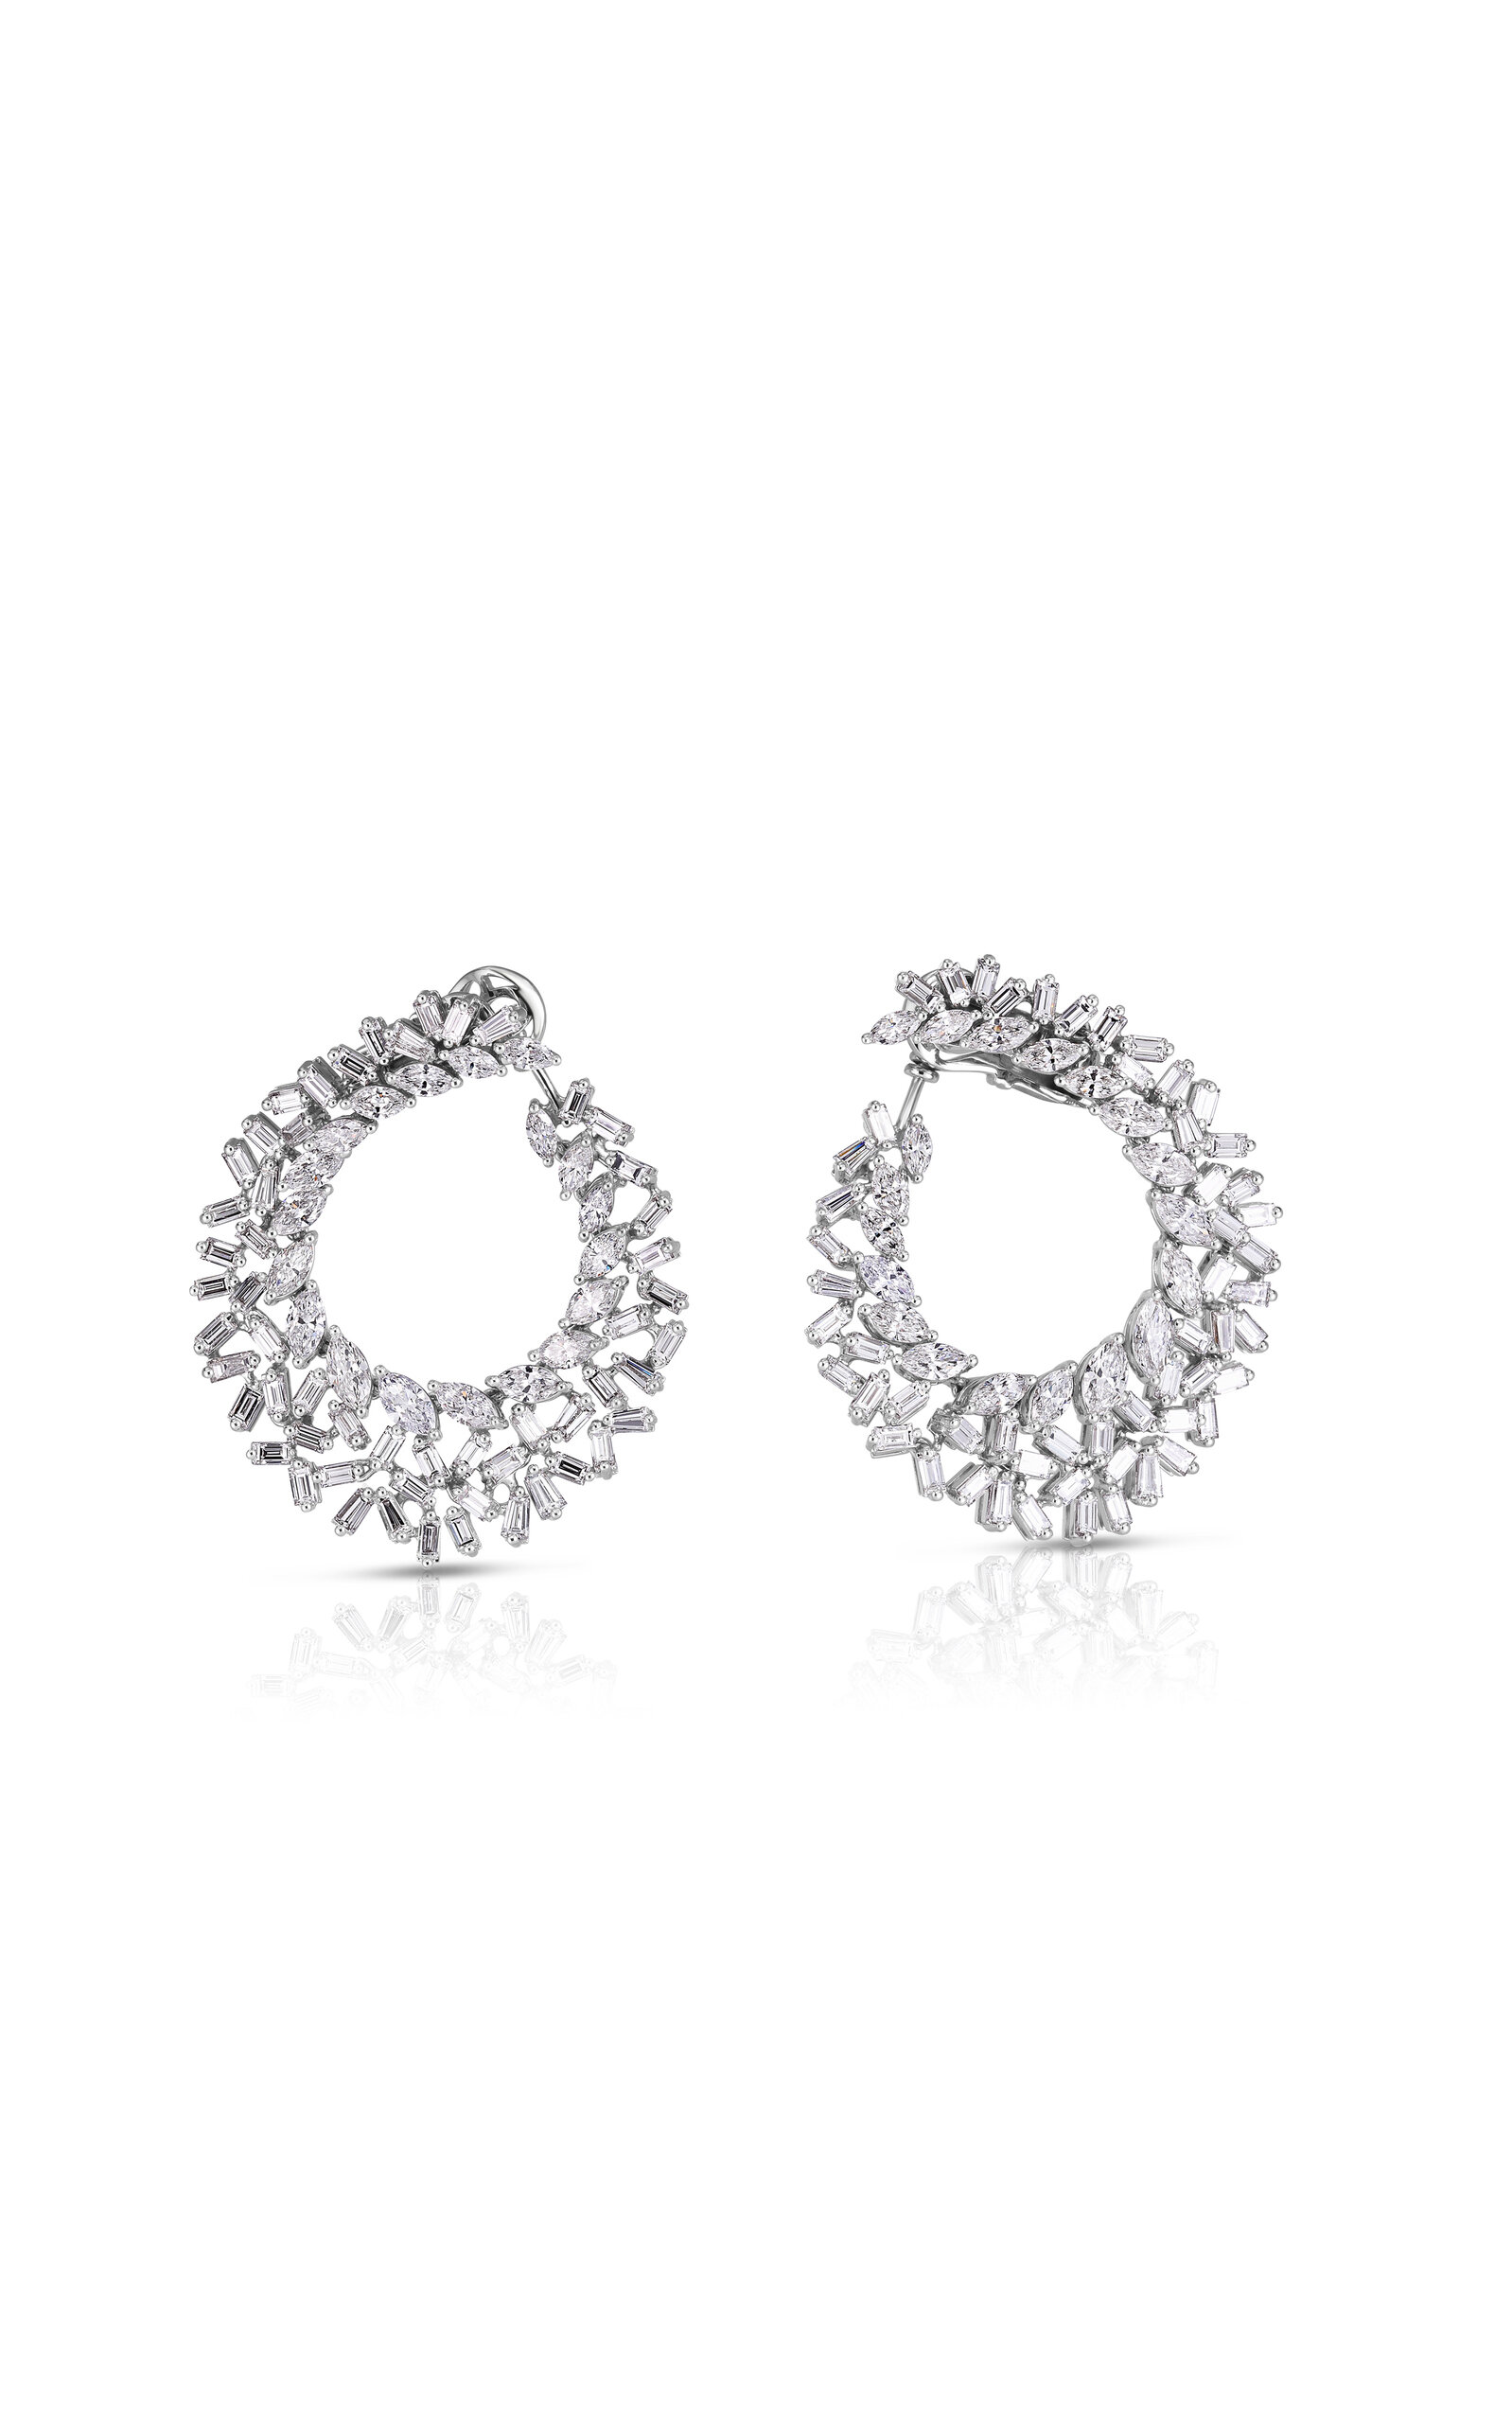 18k White Gold All-Diamond Cluster Hoop Earrings